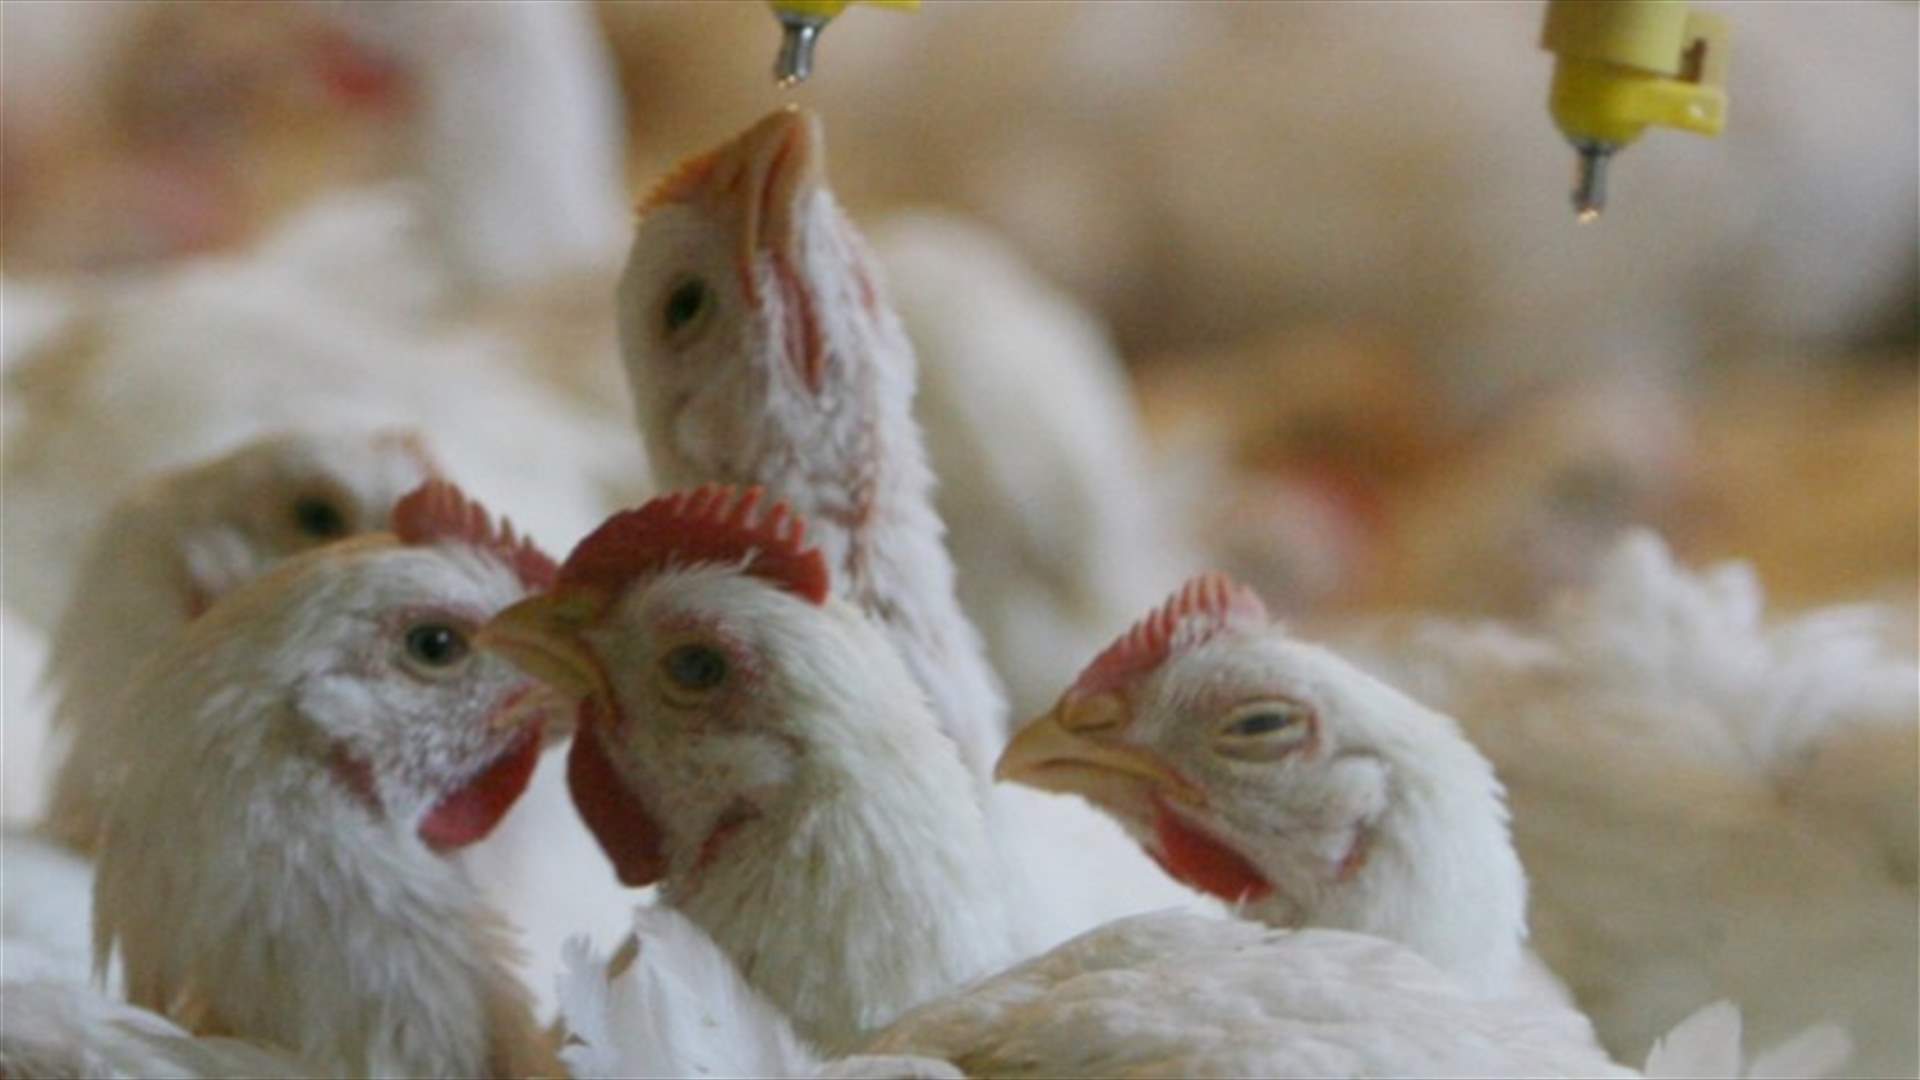 إنهم يقتلوننا... بالدجاج! مزارع الدواجن تستخدم مضادات حيوية تساهم في نقص المناعة (الاخبار)